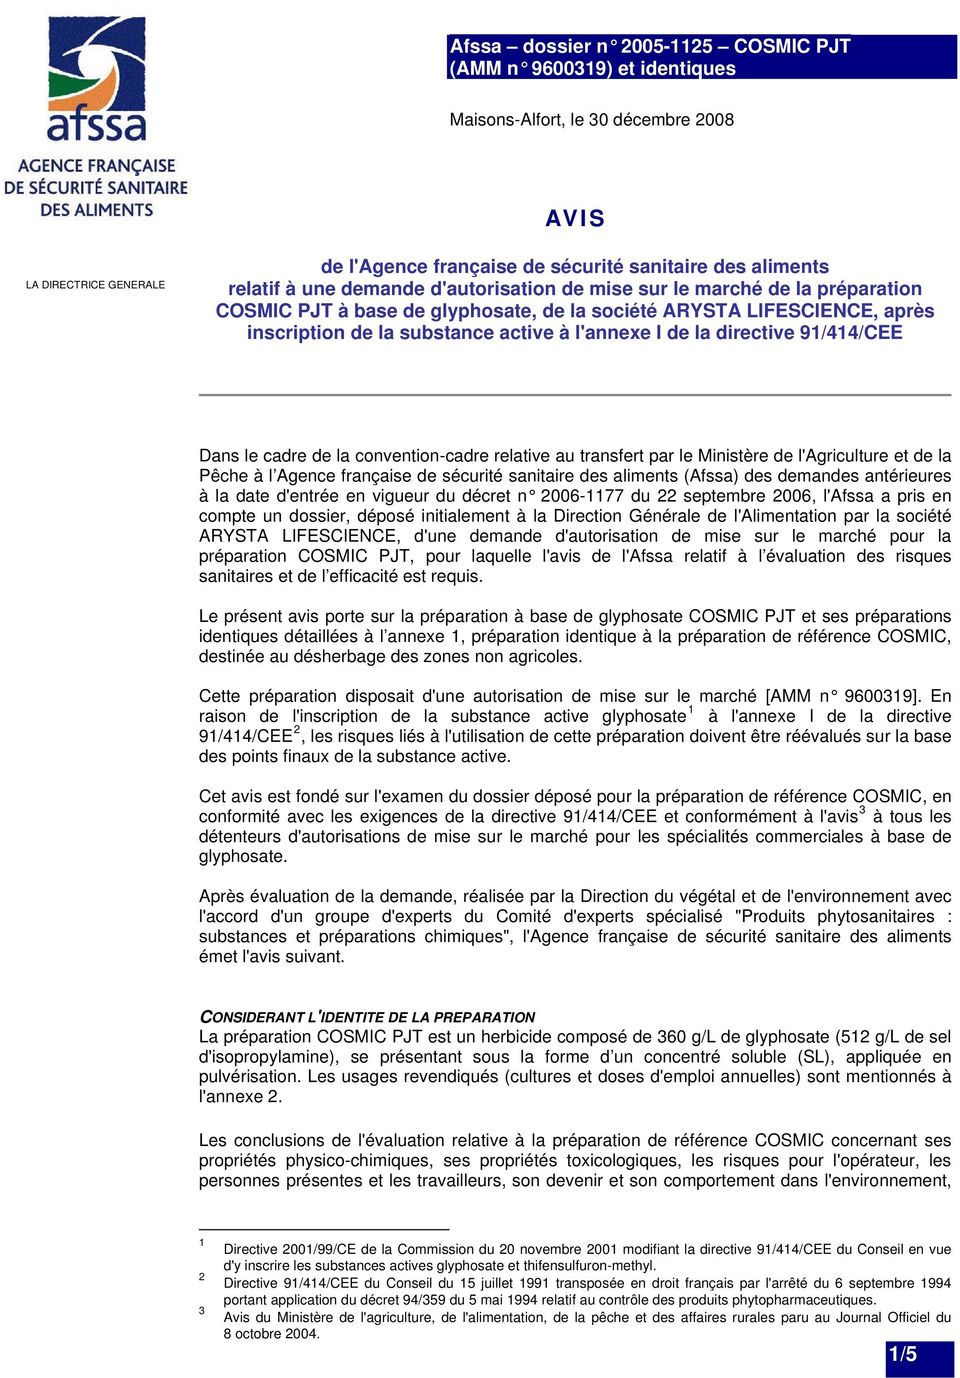 le Ministère de l'agriculture et de la Pêche à l Agence française de sécurité sanitaire des aliments (Afssa) des demandes antérieures à la date d'entrée en vigueur du décret n 2006-1177 du 22